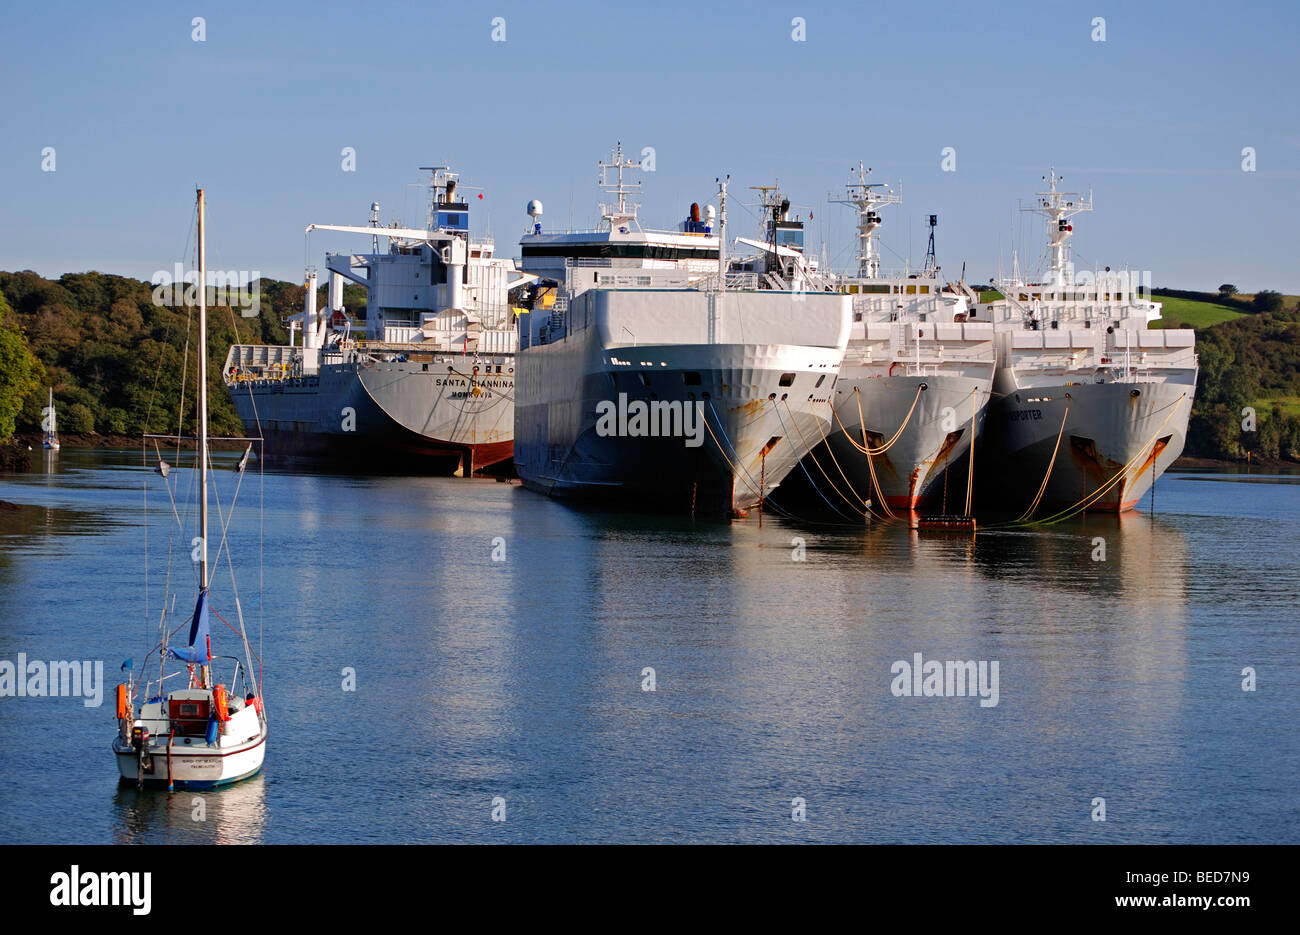 Grandi navi da carico prevista in una profonda insenatura sul fiume fal vicino a Truro in Cornovaglia, Regno Unito Foto Stock